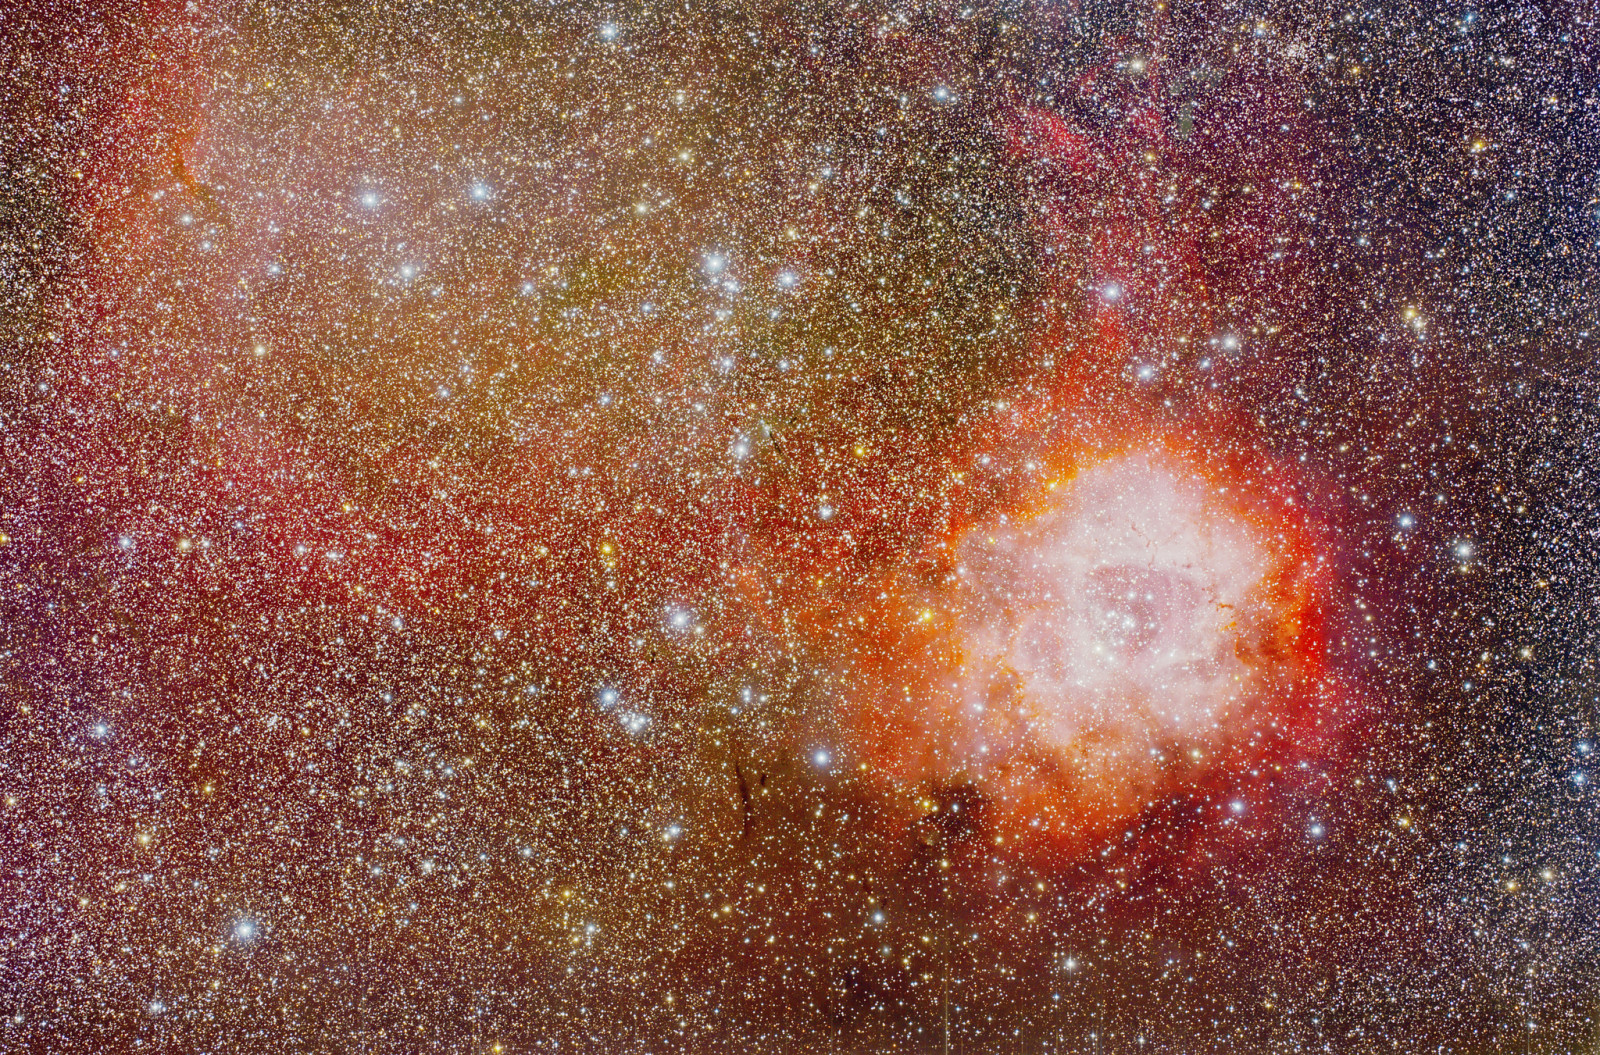 空间, 星云, 玫瑰花结, 独角兽, 在星座中, 出口, NGC 2237